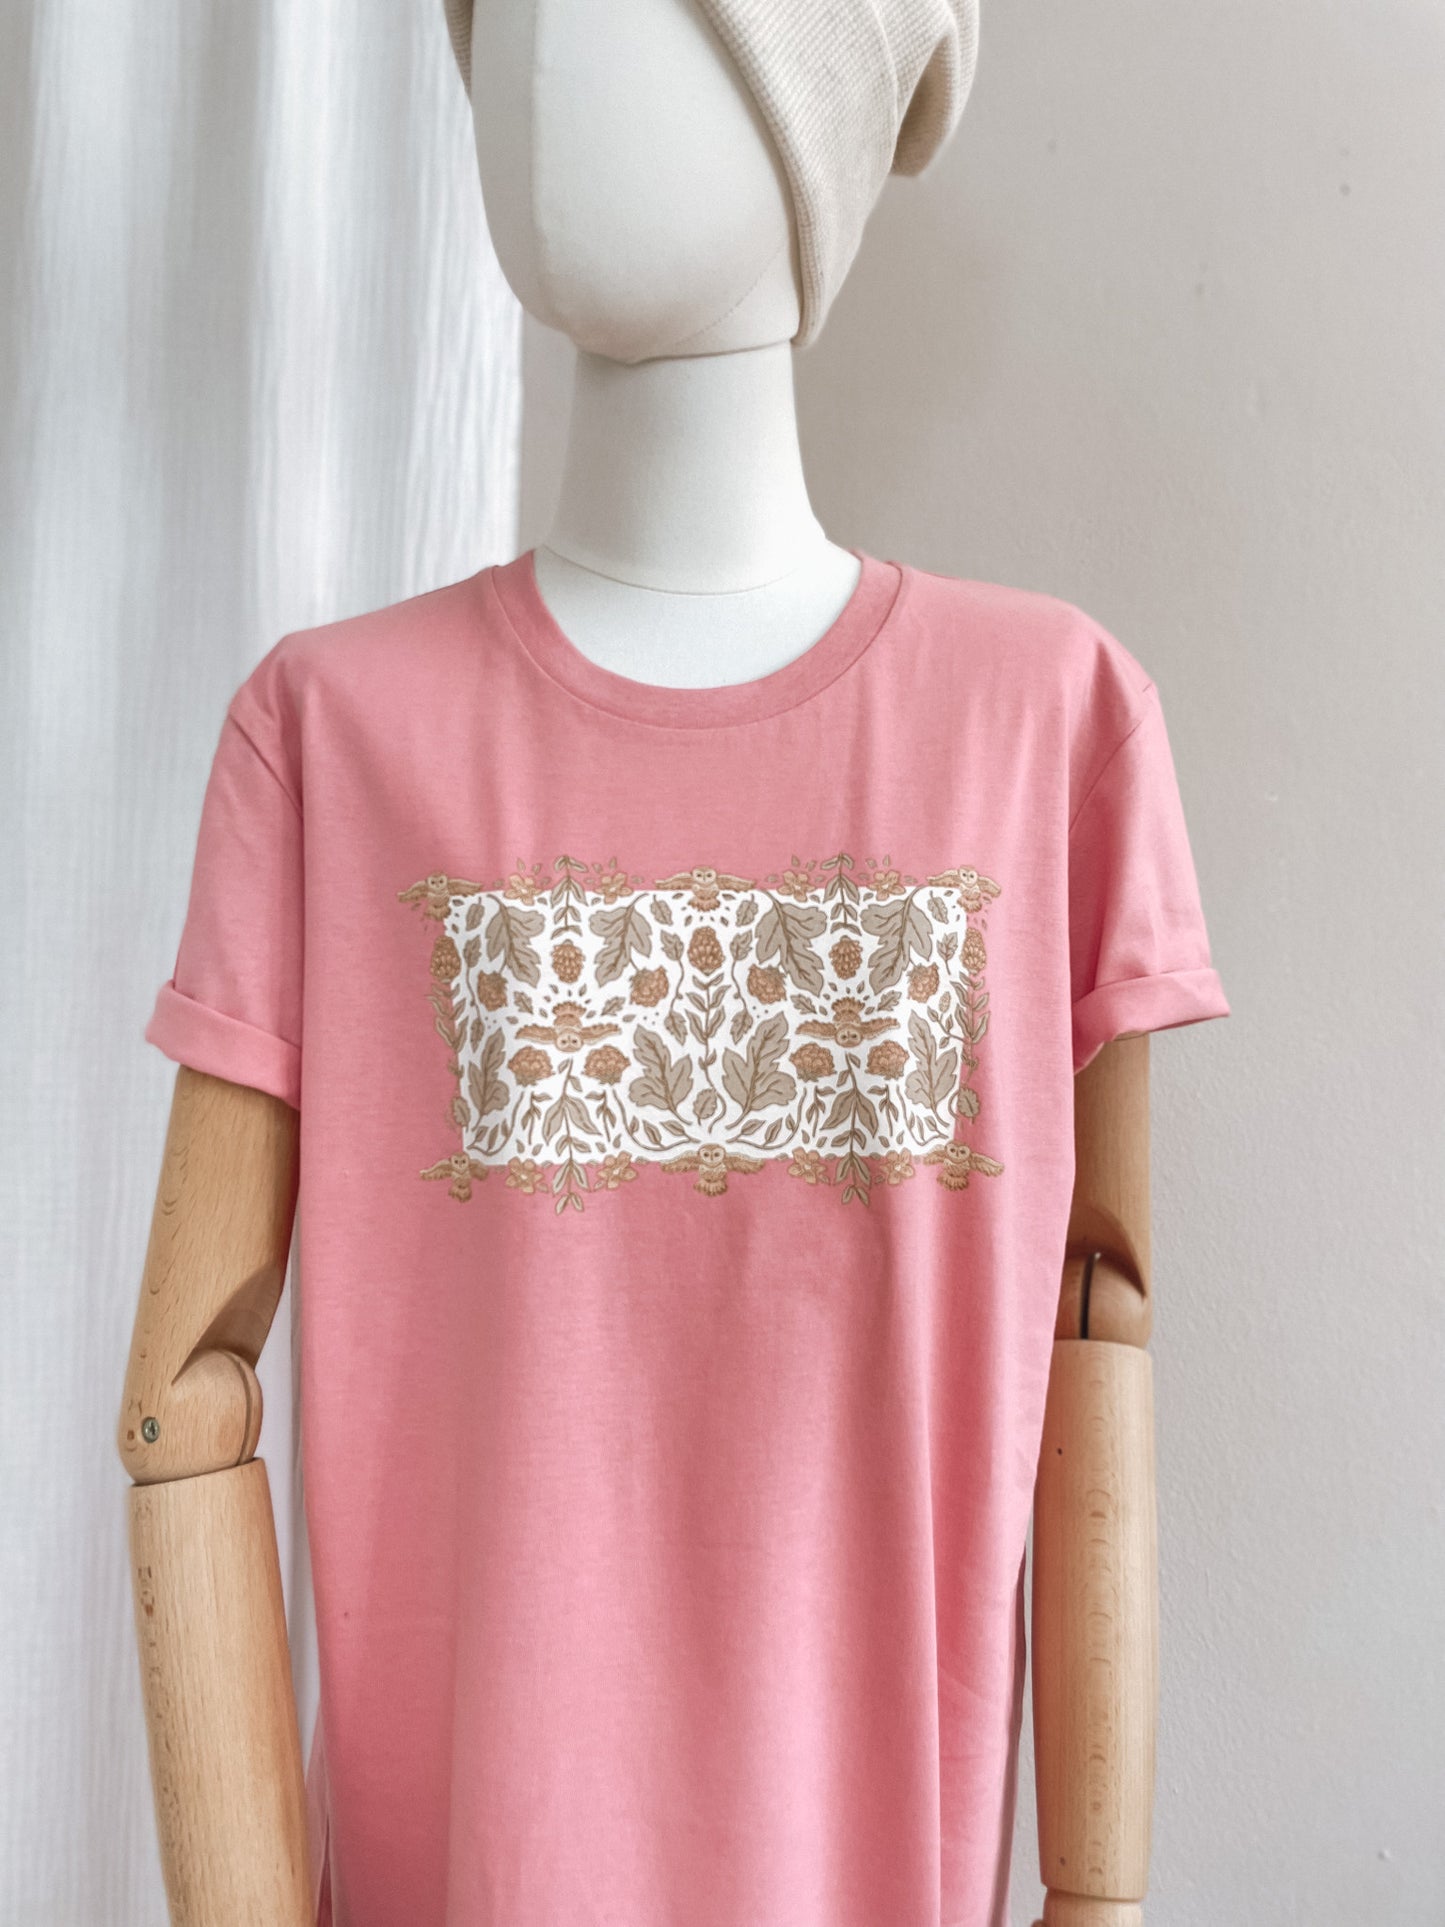 T-shirt dress / Ecru green botanical owls / bubble gum